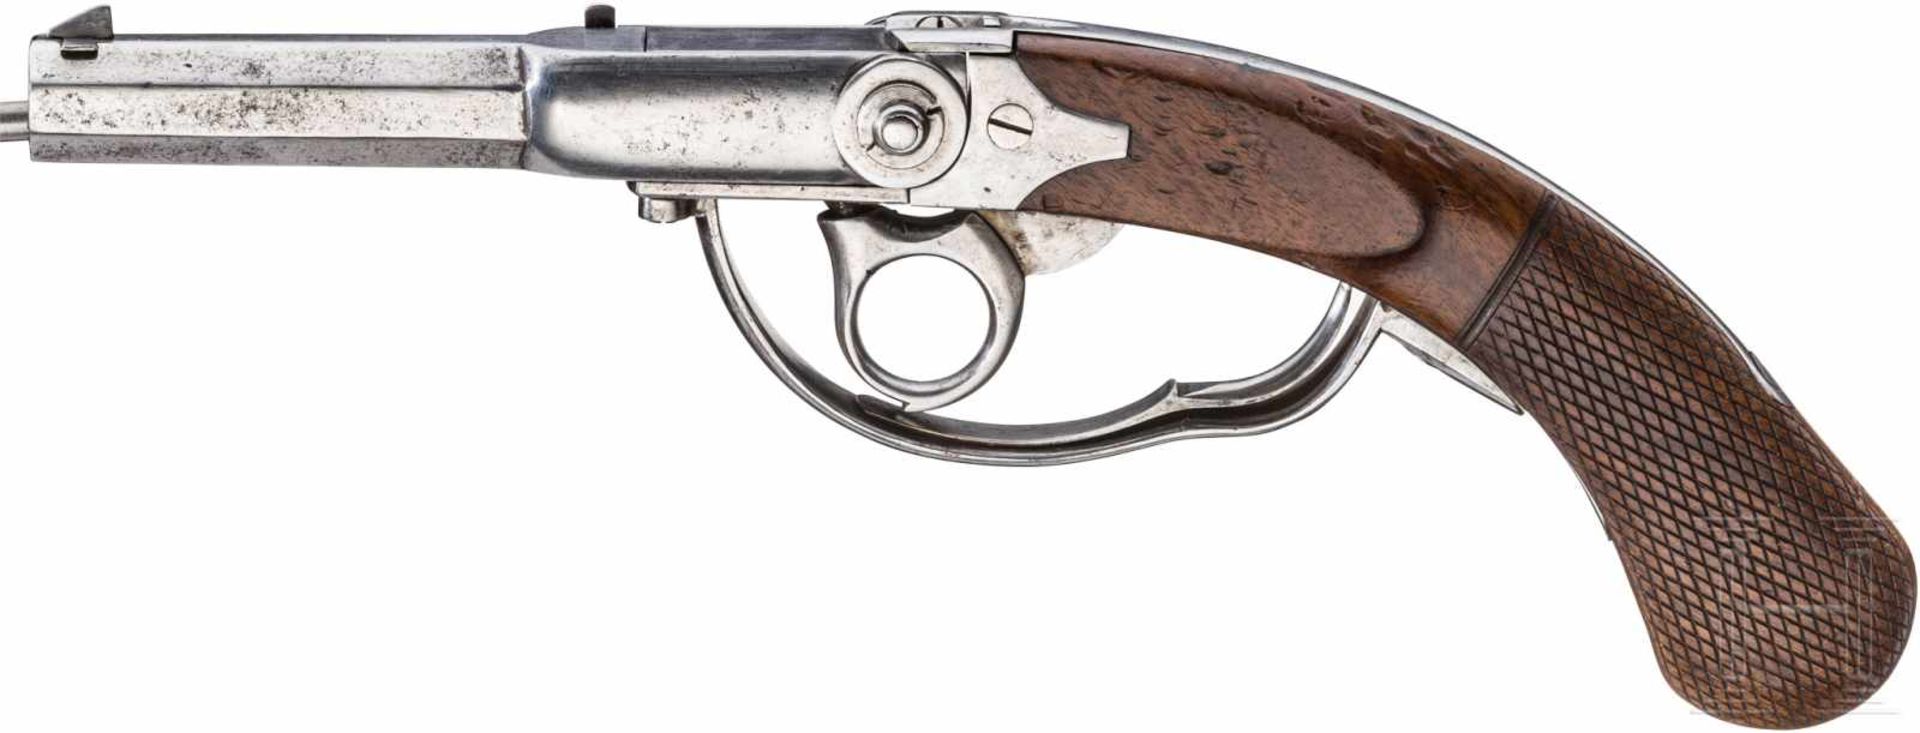 Löbnitz-Pistole M 1841Achtkantiger Lauf mit sechsfach gezogener Seele im Kaliber 12 mm. - Bild 2 aus 4